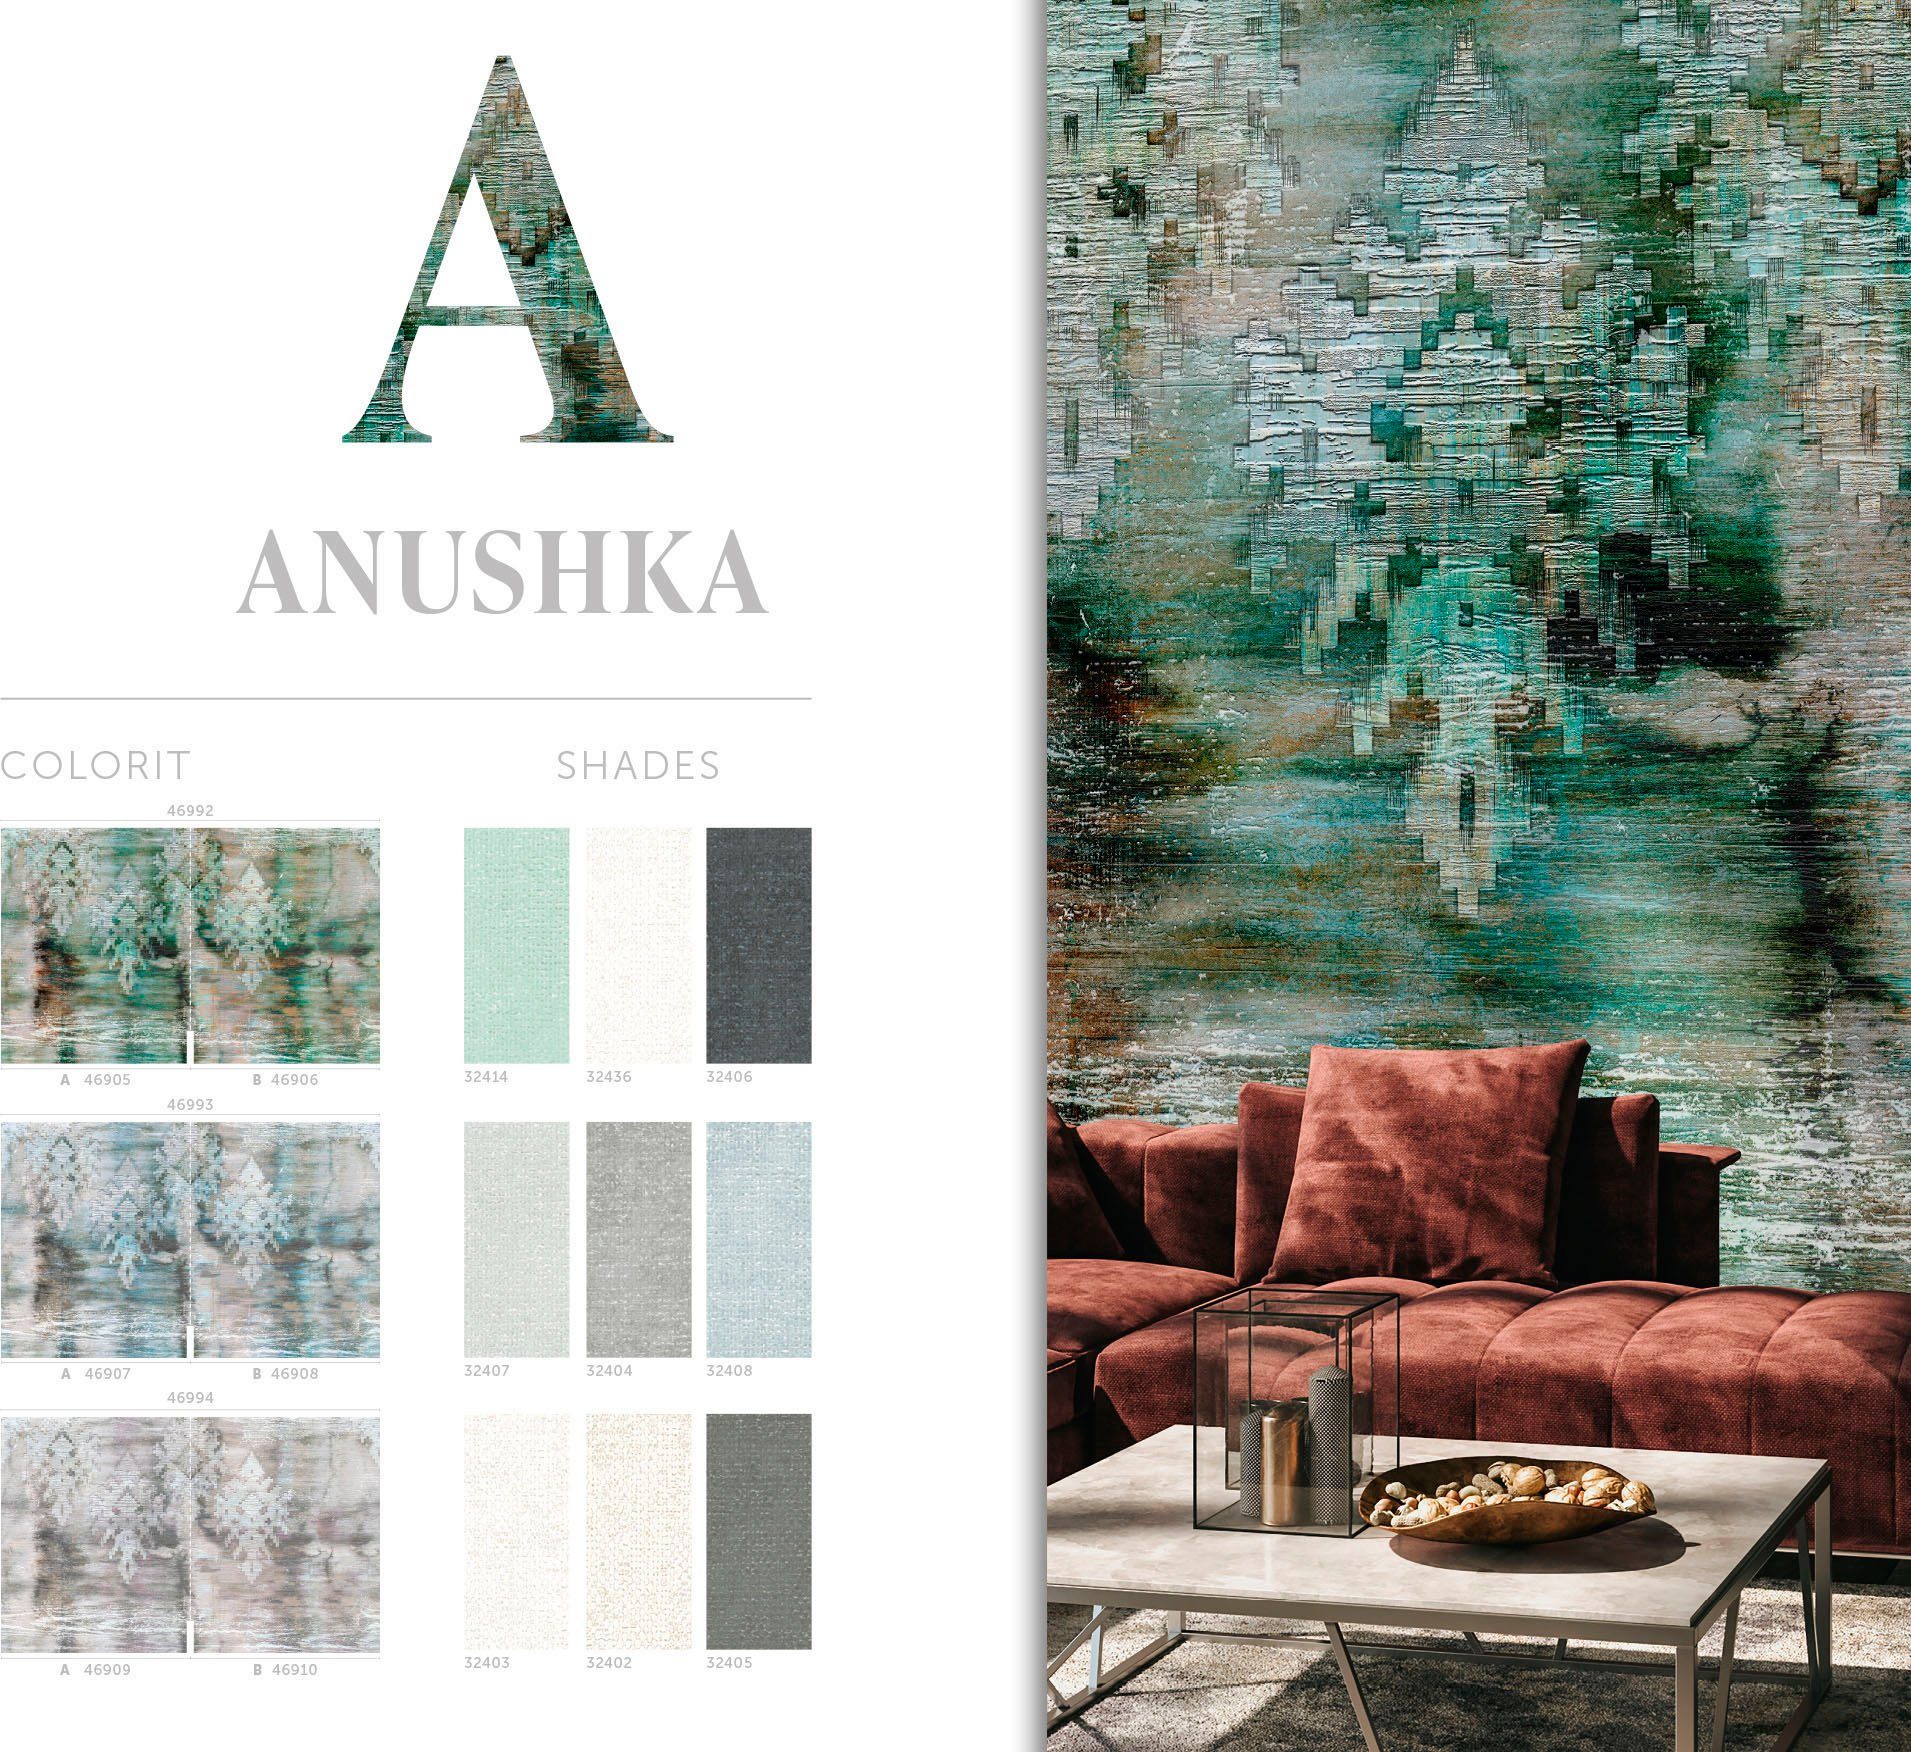 Anushka, Vliestapete glatt, Fototapete Marburg grau-grün Wohnzimmer Schlafzimmer Küche für moderne matt,